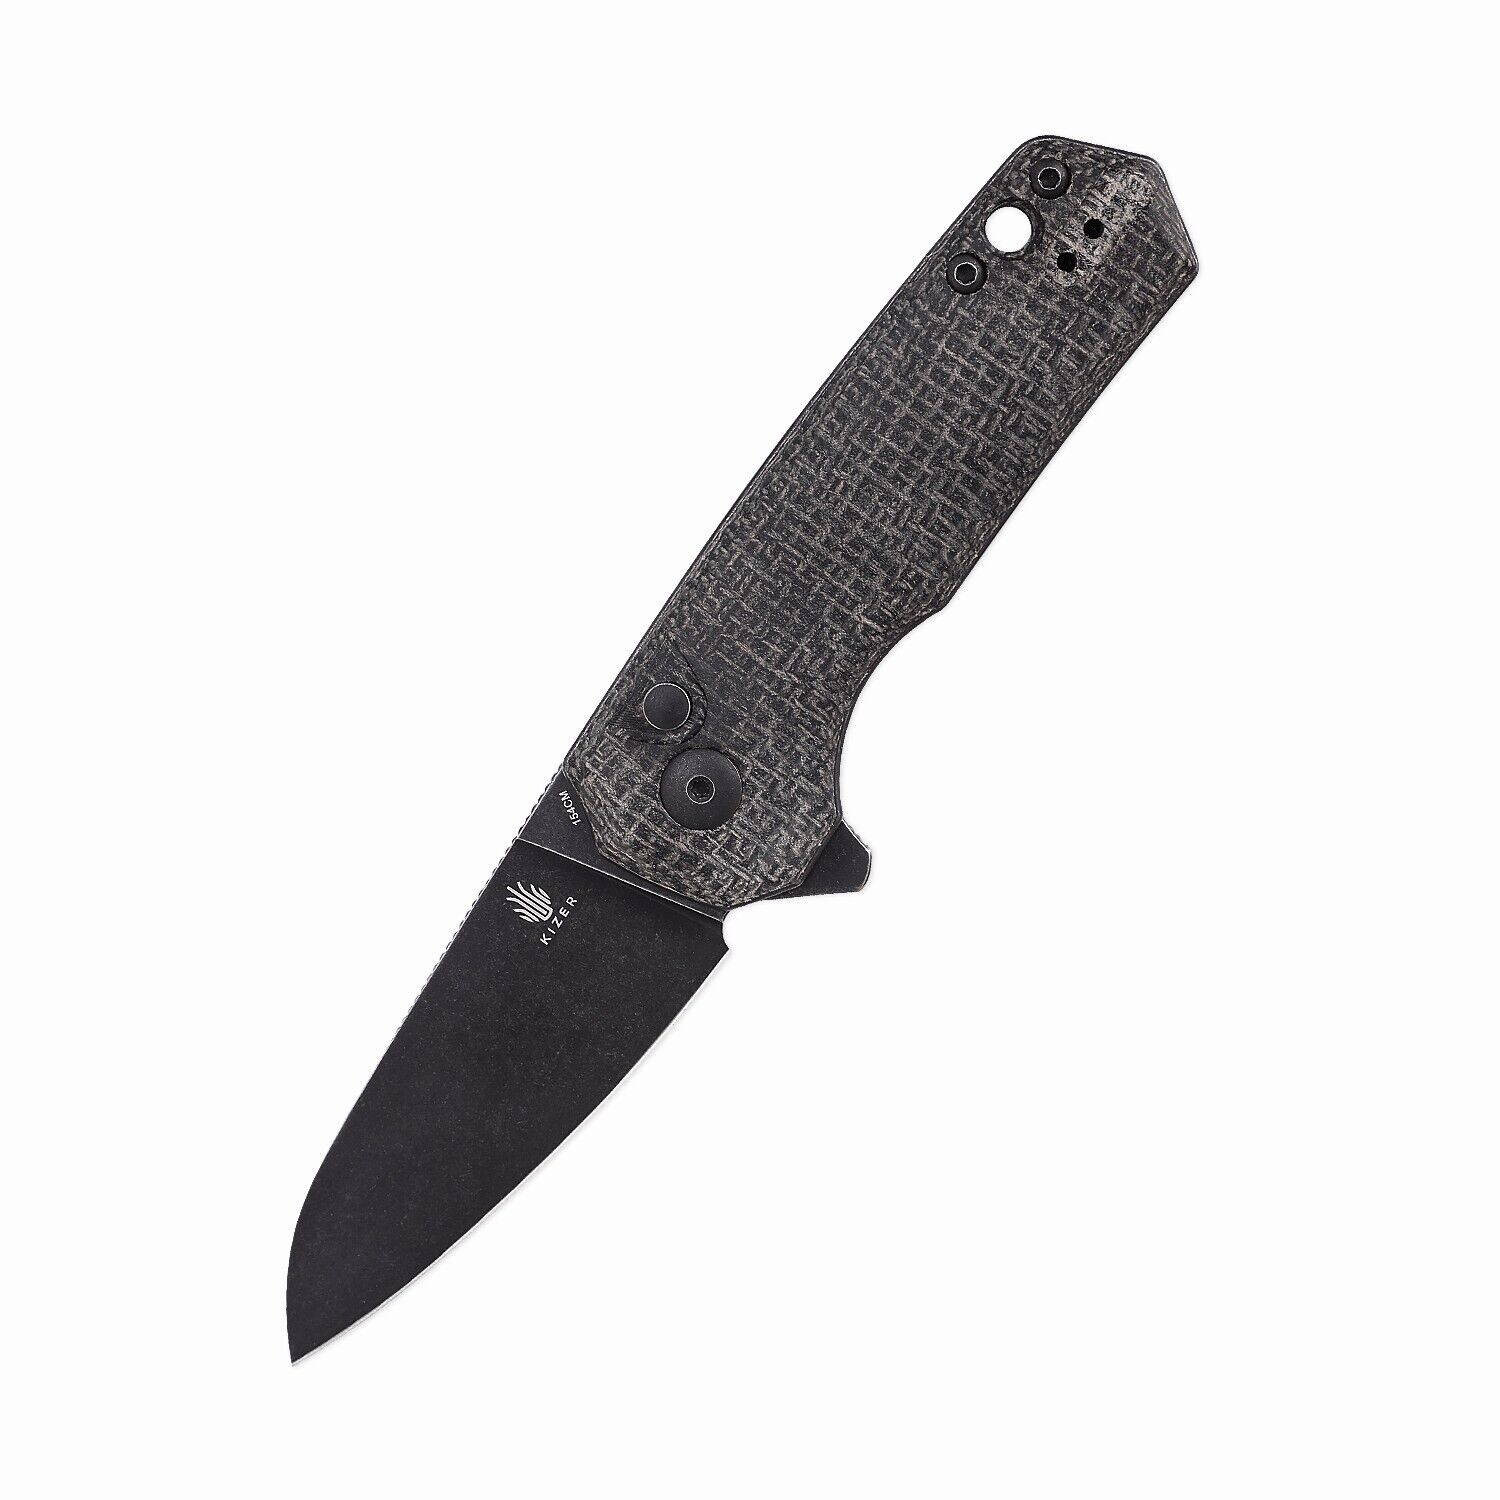 Kizer Lieb M Pocket Knife 154CM Steel Black Micarta Handle V3541C2